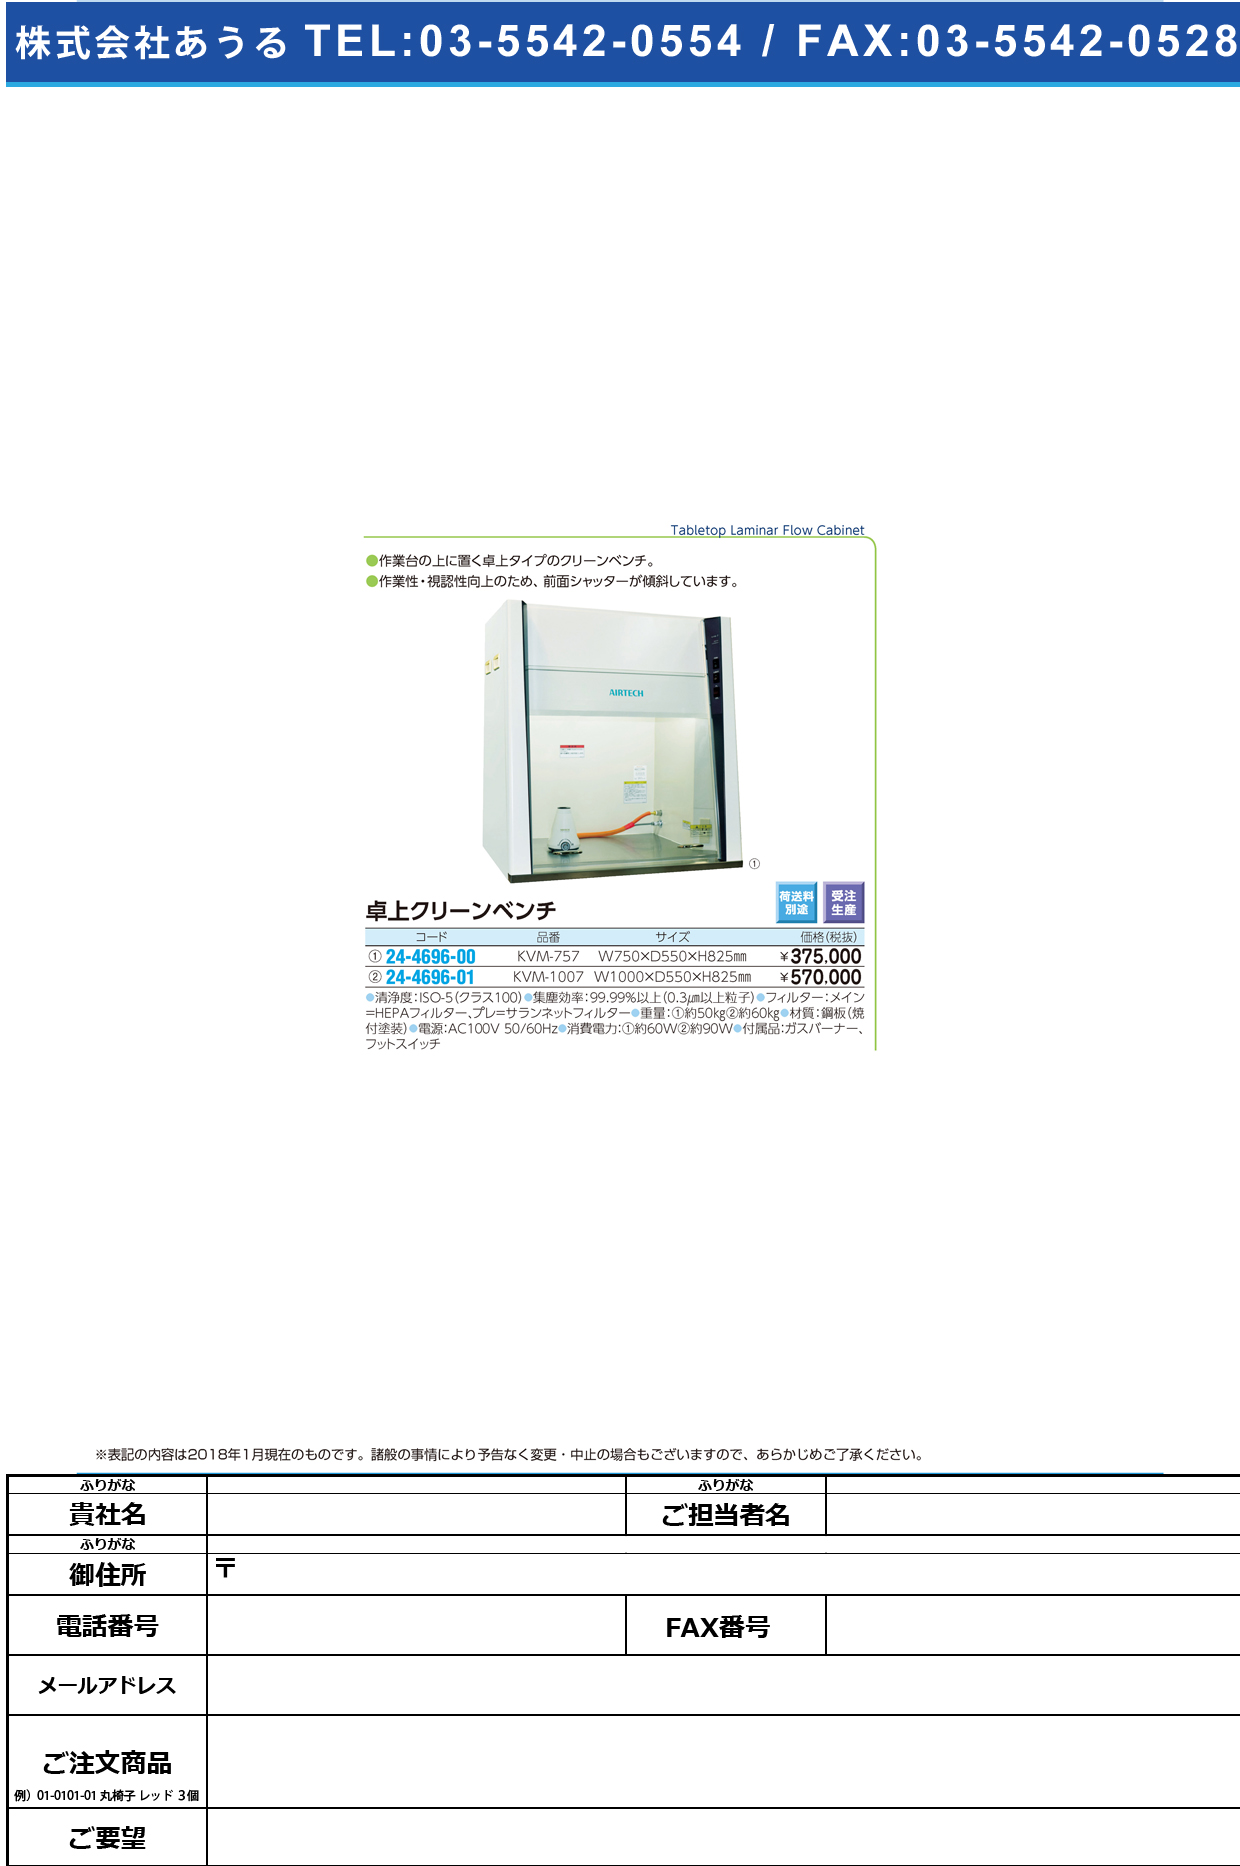 (24-4696-00)卓上クリーンベンチ KVM-757 ﾀｸｼﾞｮｳｸﾘｰﾝﾍﾞﾝﾁ【1台単位】【2019年カタログ商品】